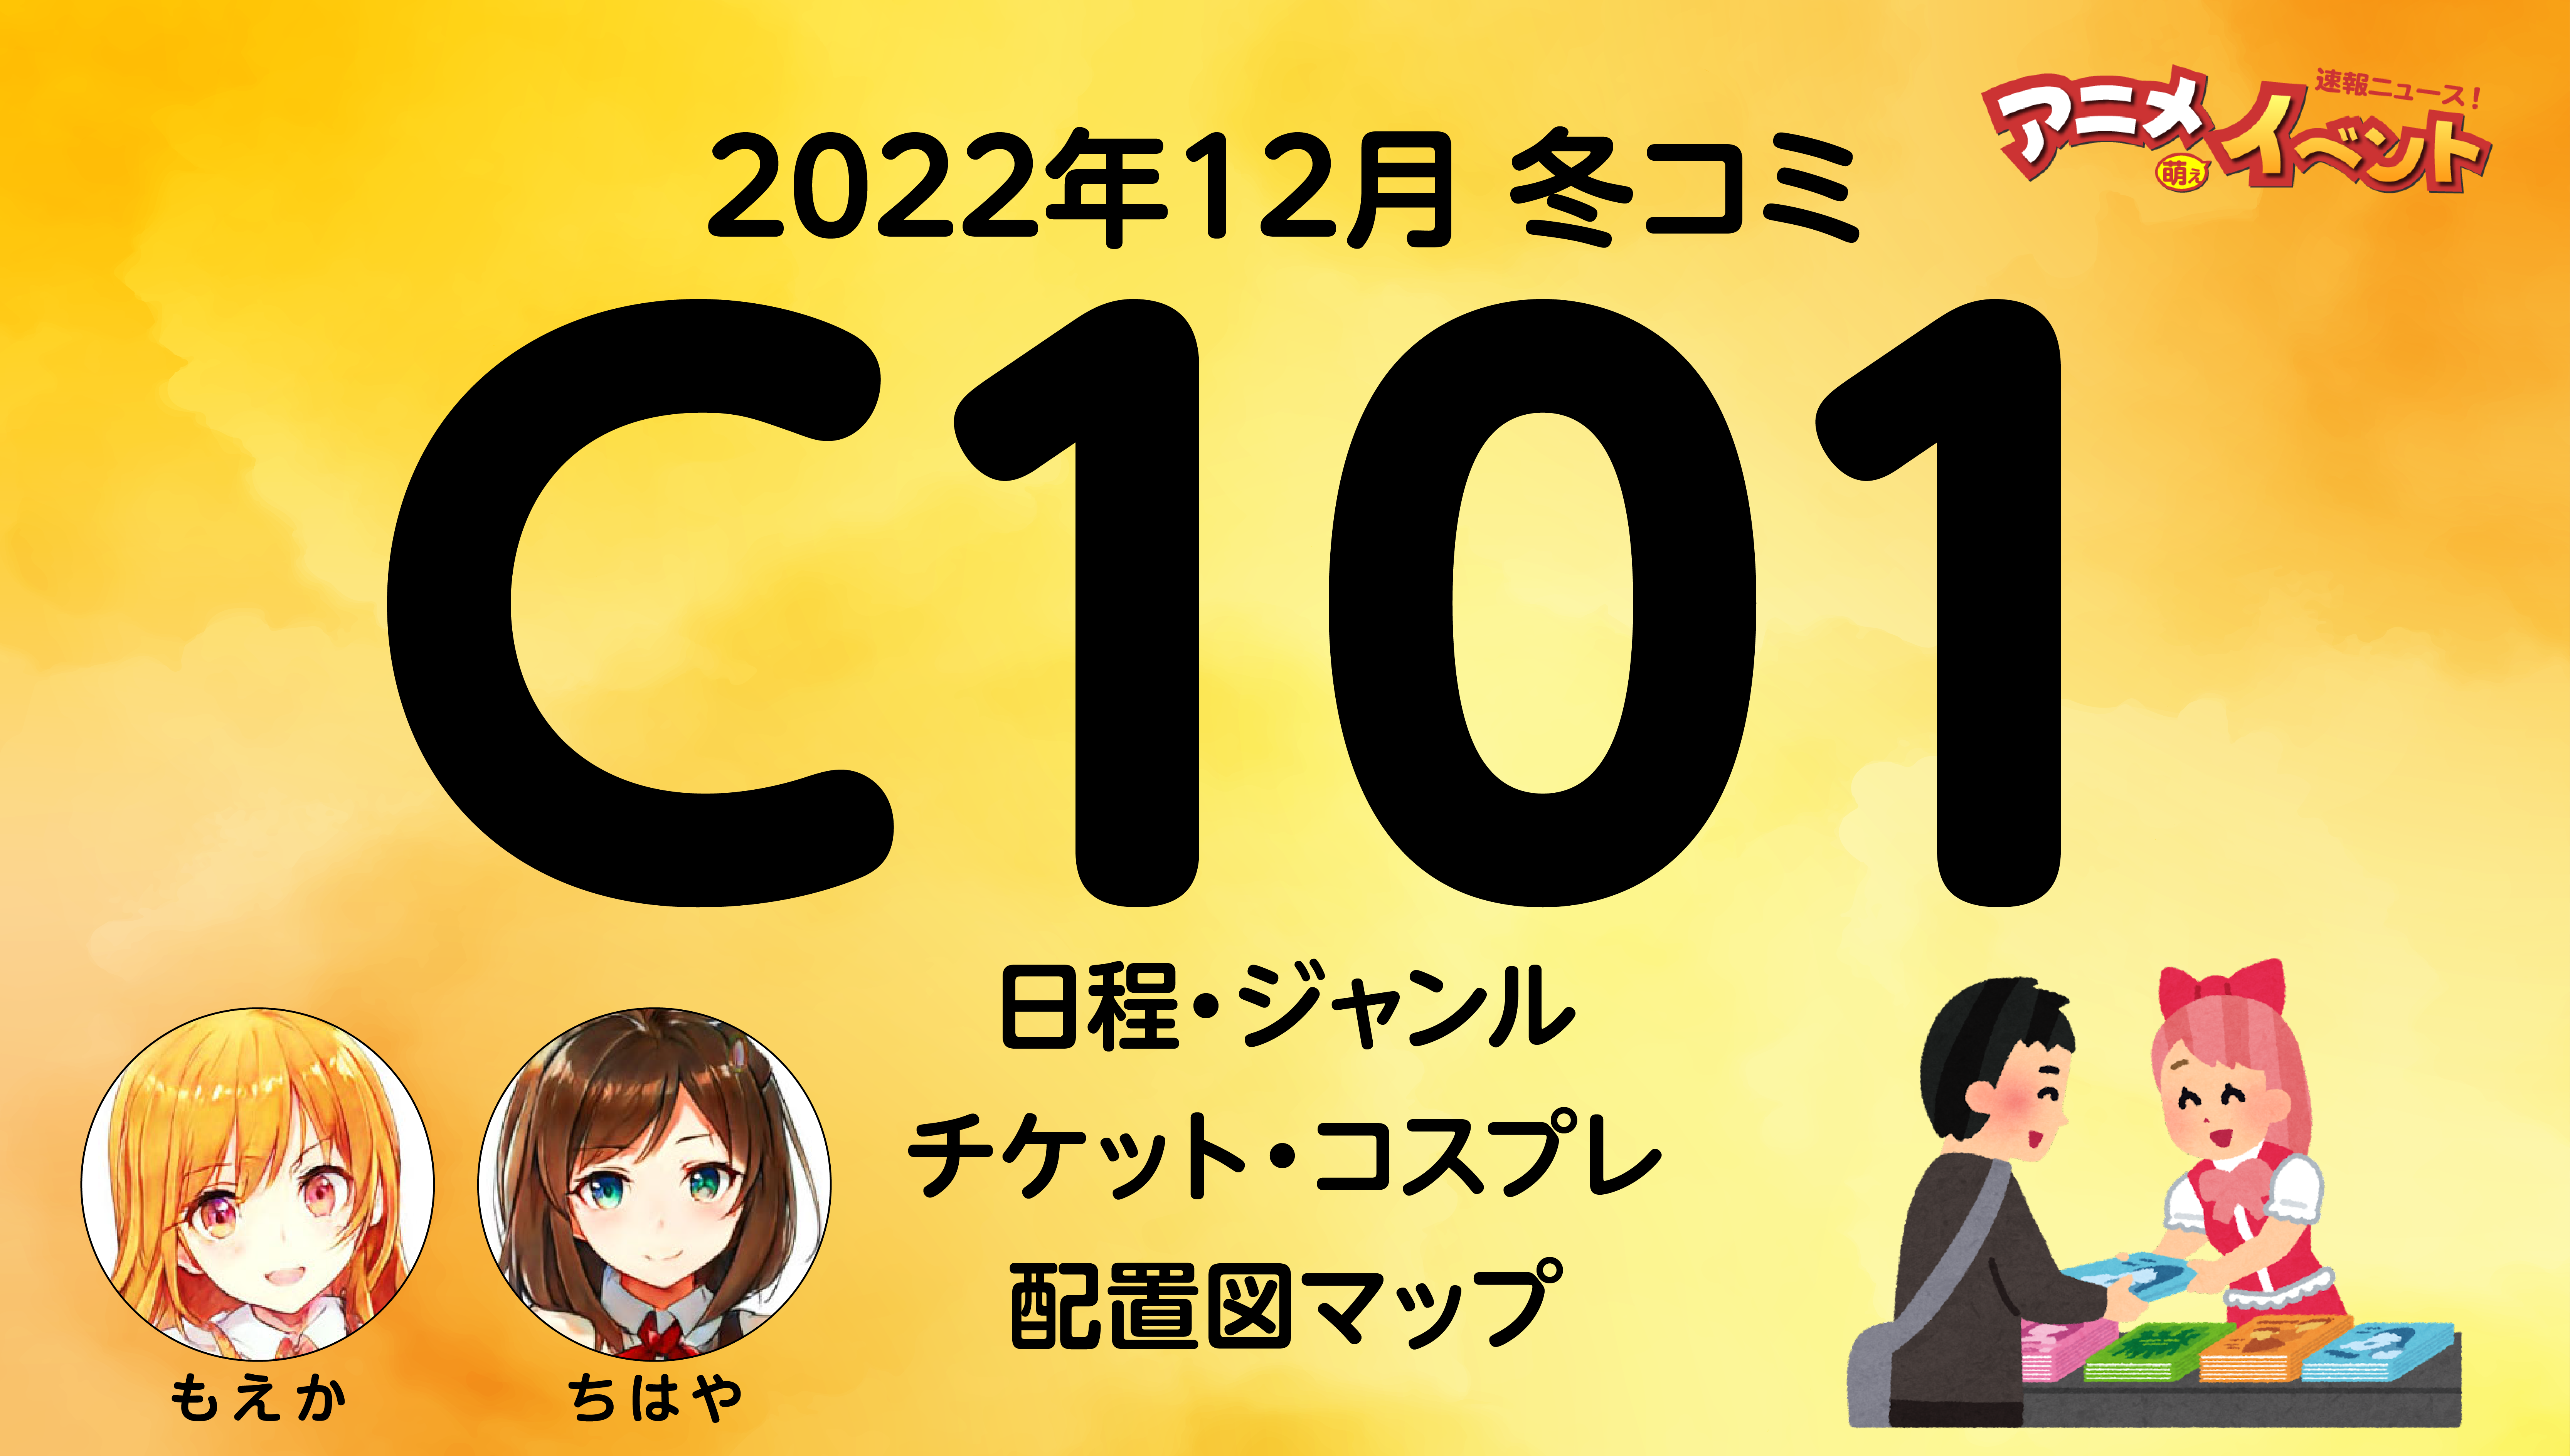 コミケ c101 2日目 コミックマーケット サークルチケット サクチケ 12 ...